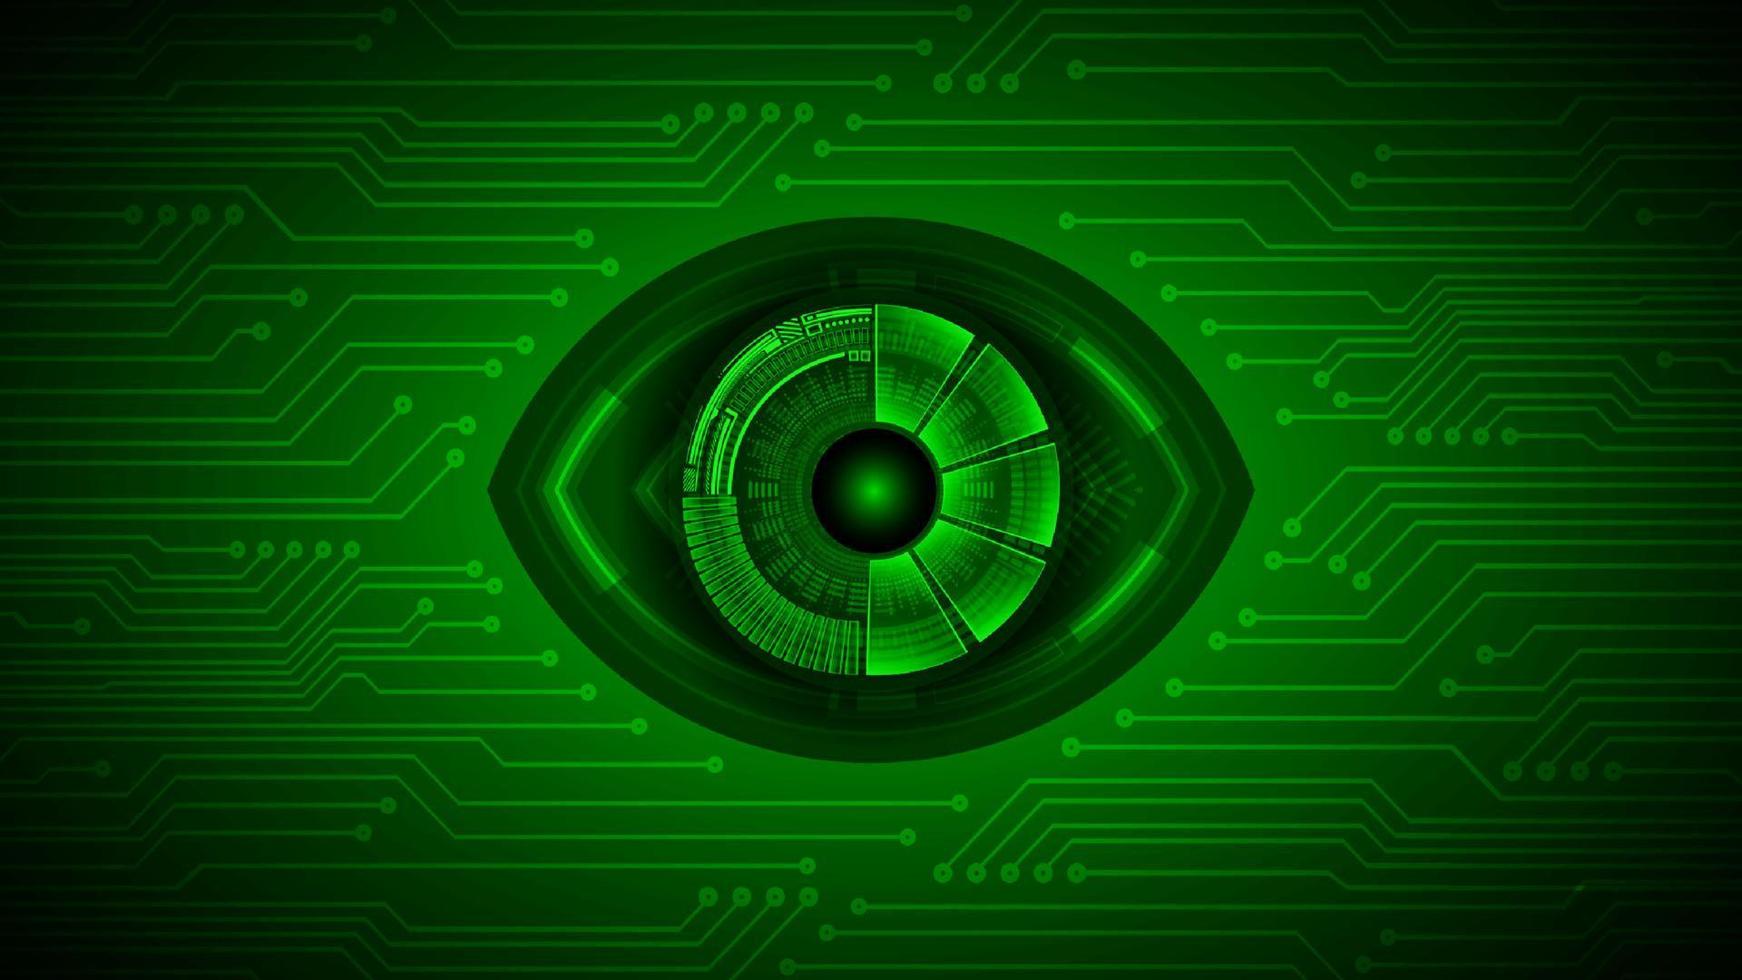 fondo de tecnología de ciberseguridad con ojo vector